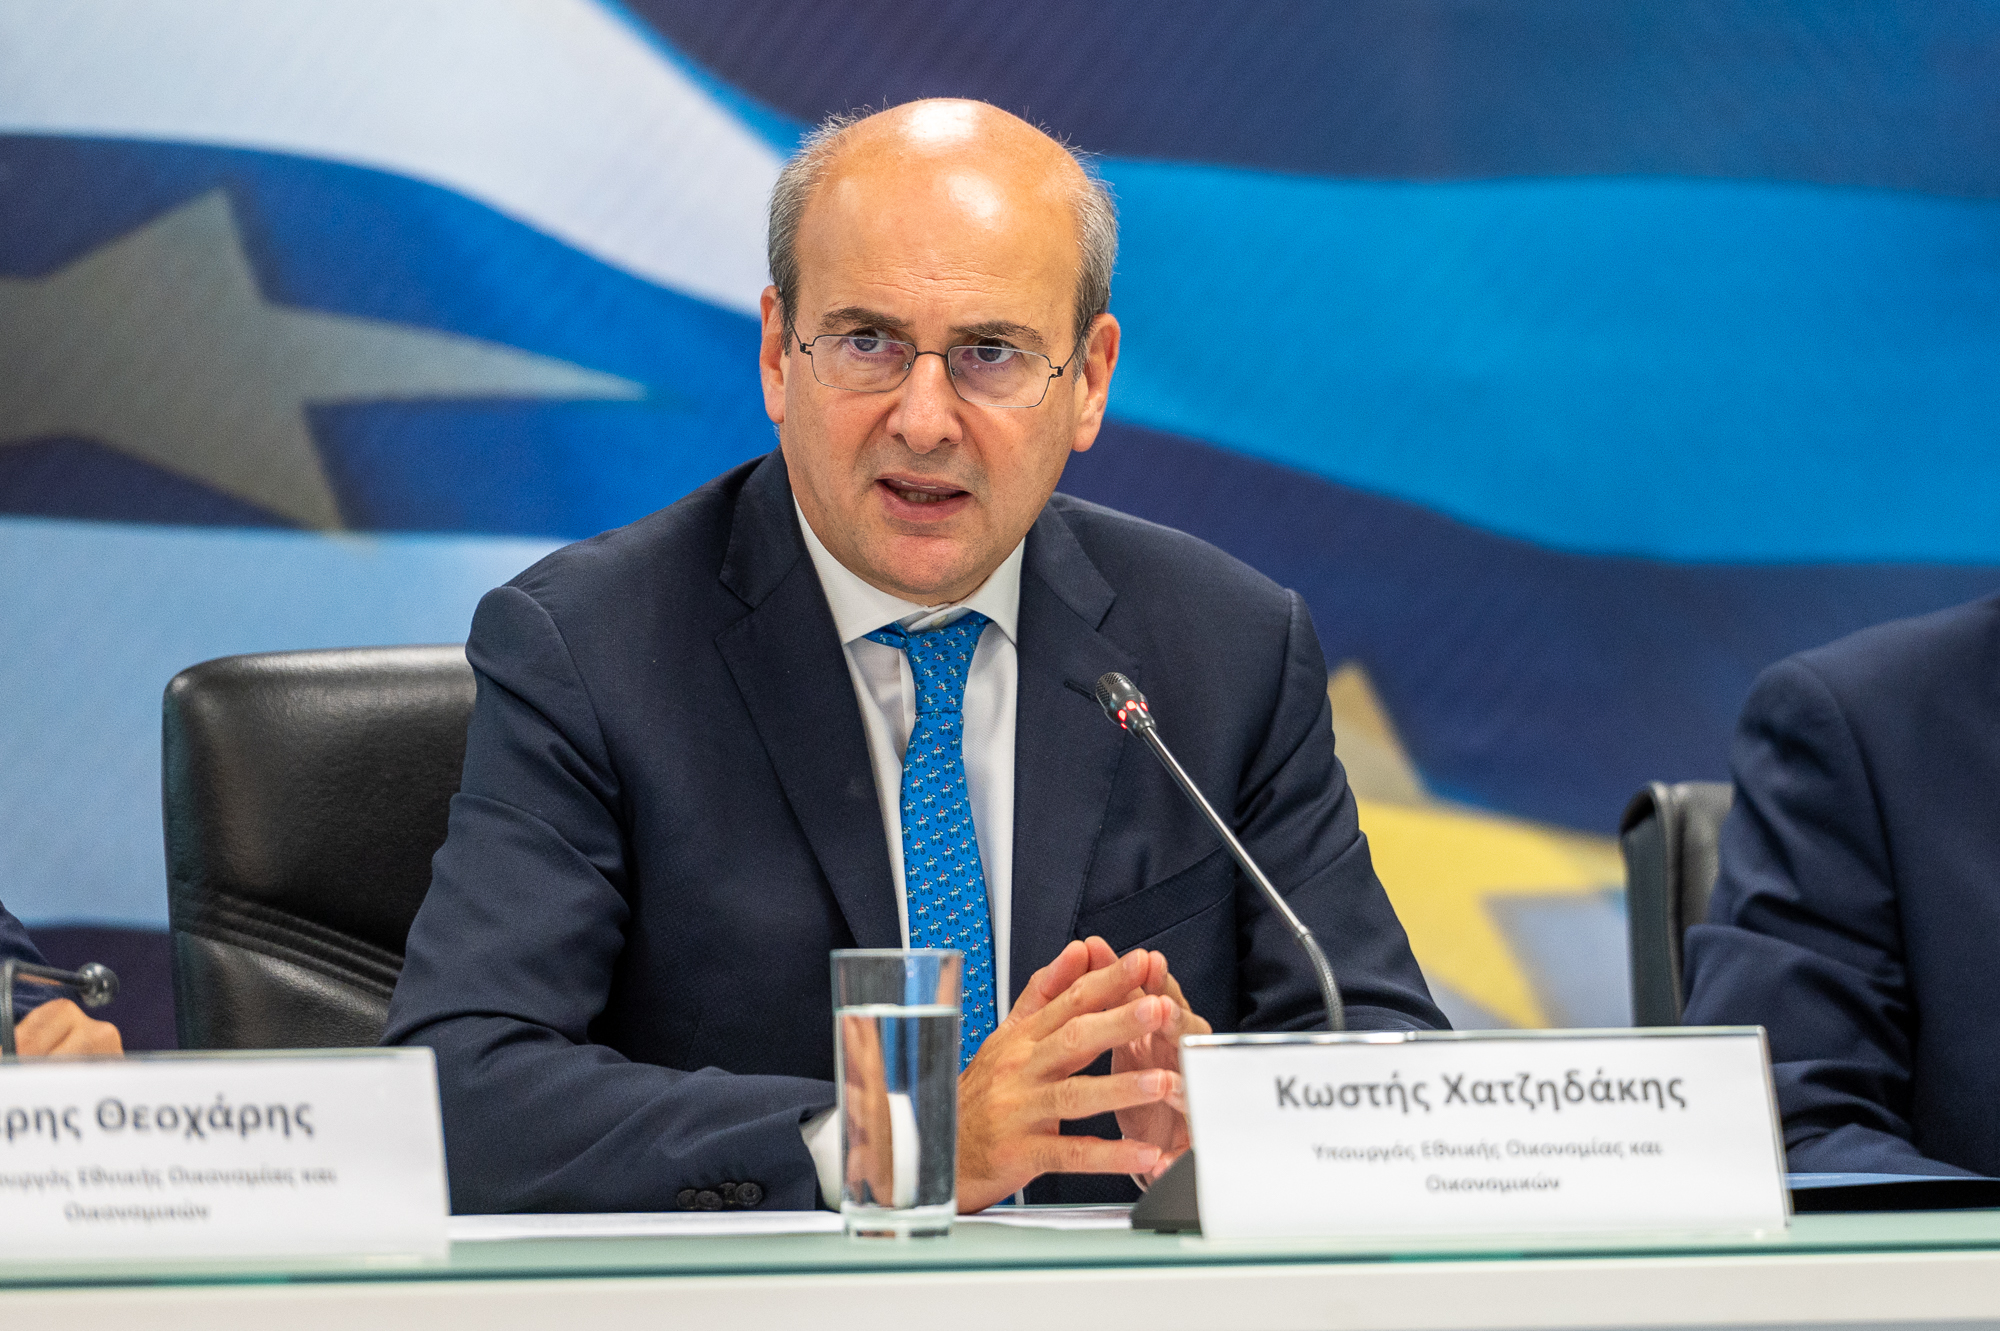 O Υπουργός Εθνικής Οικονομίας και Οικονομικών Κωστής Χατζηδάκης στις συνεδριάσεις του Eurogroup και ECOFIN, στο Λουξεμβούργο